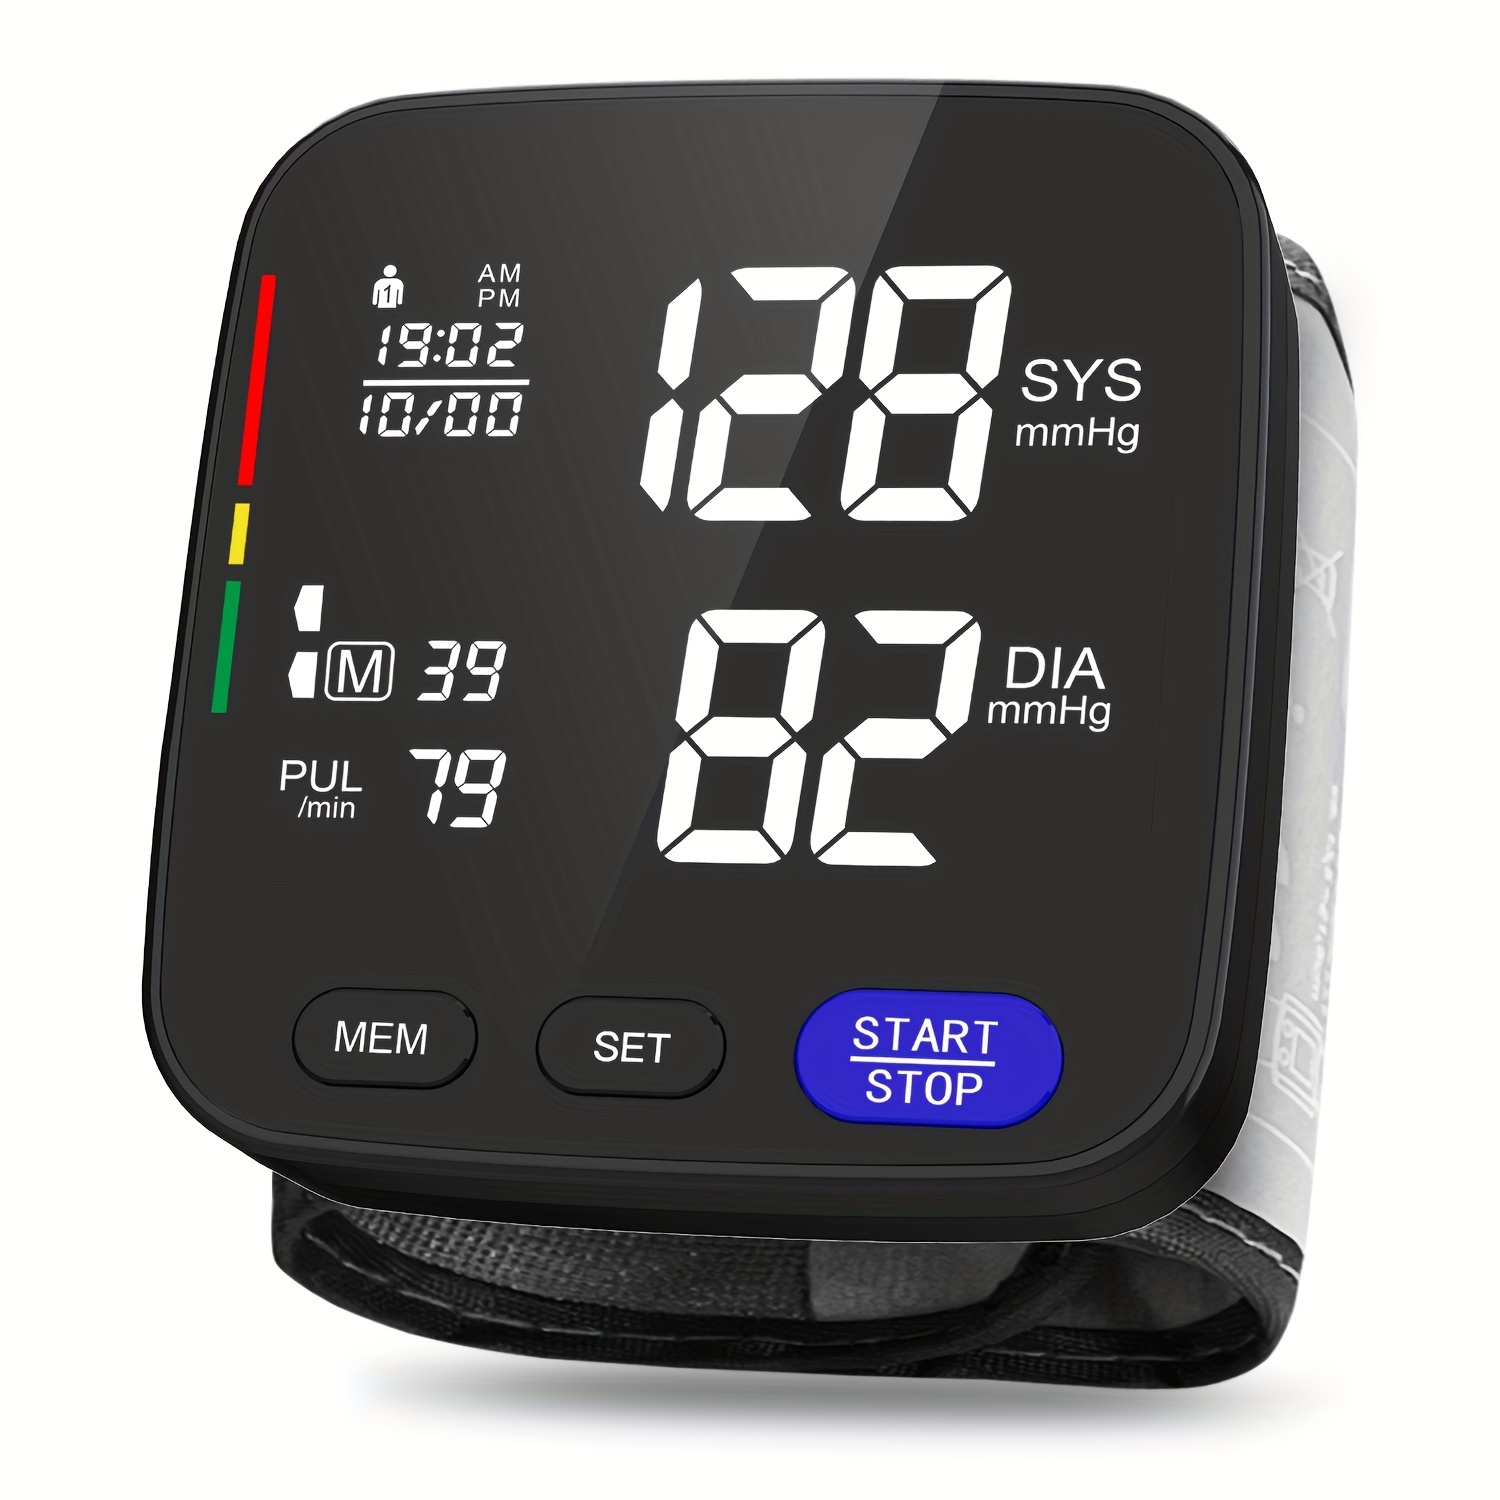 Blood Pressure Monitor Automatic Upper Arm Blood Pressure - Temu